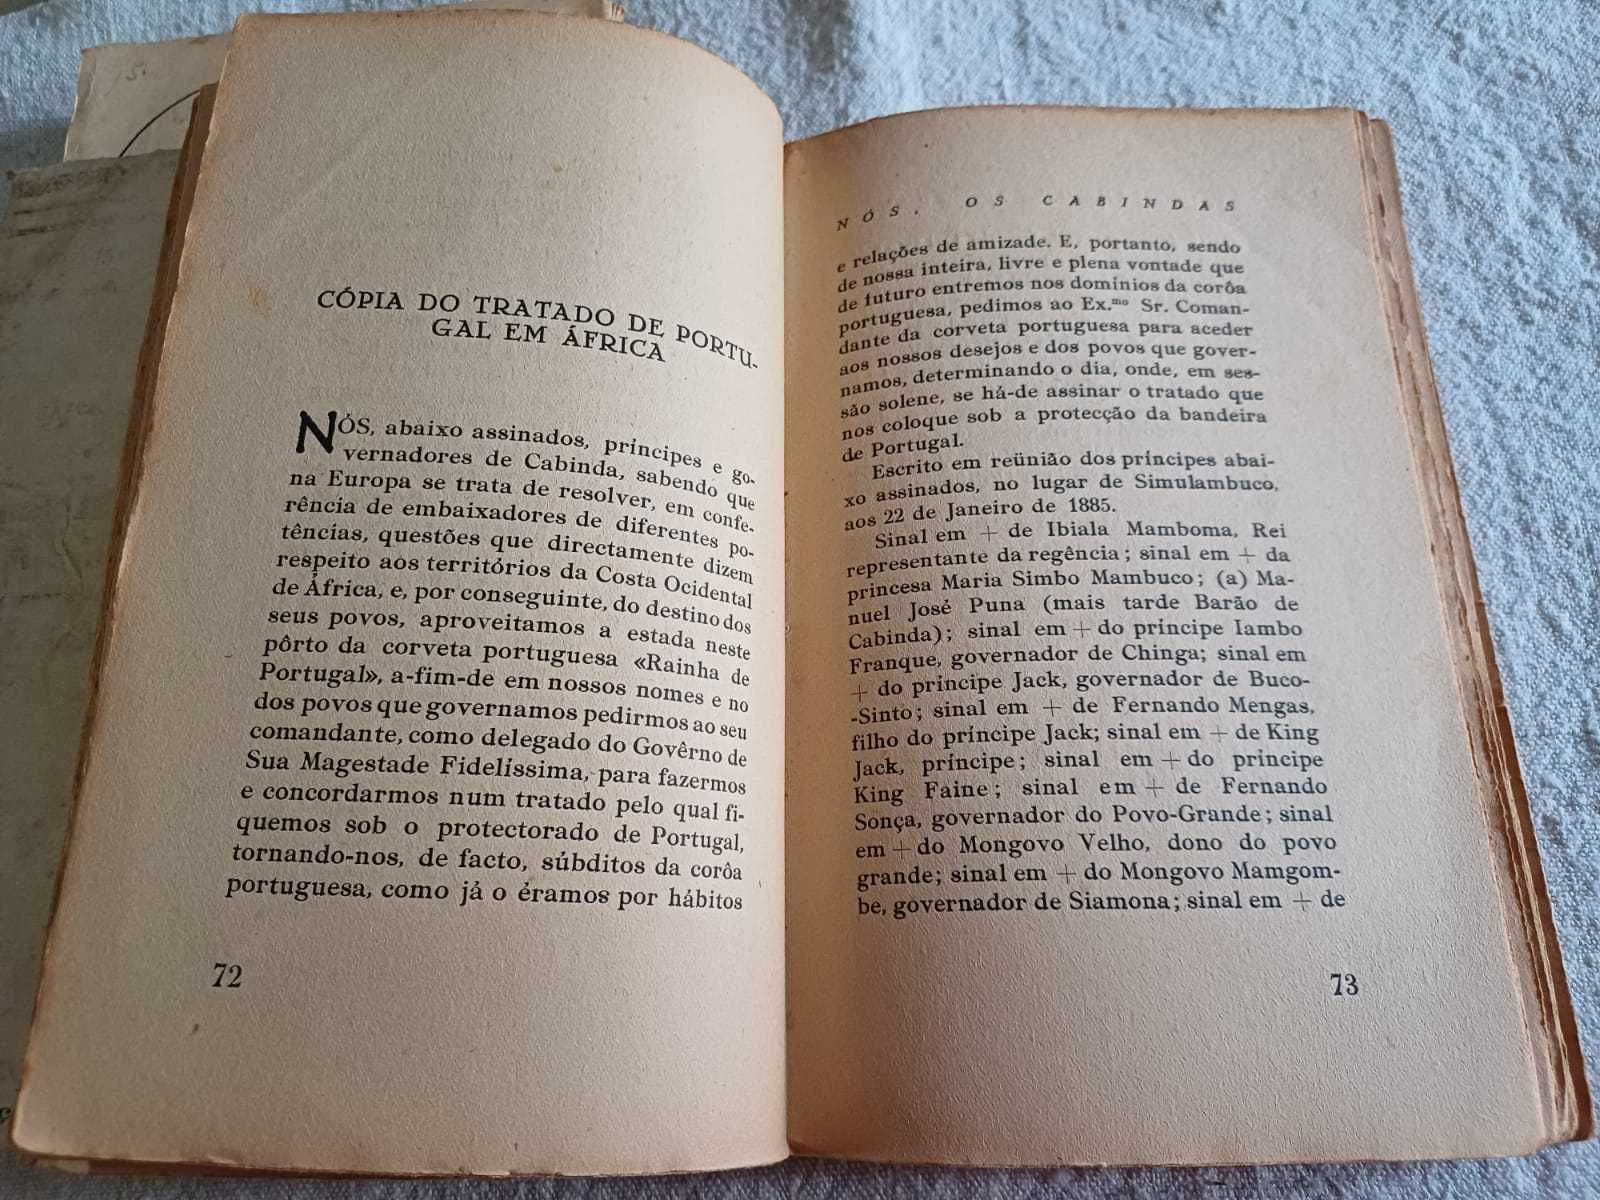 Nós os Cabindas, história dos povos de N'Goio, D. José Franque, 1940